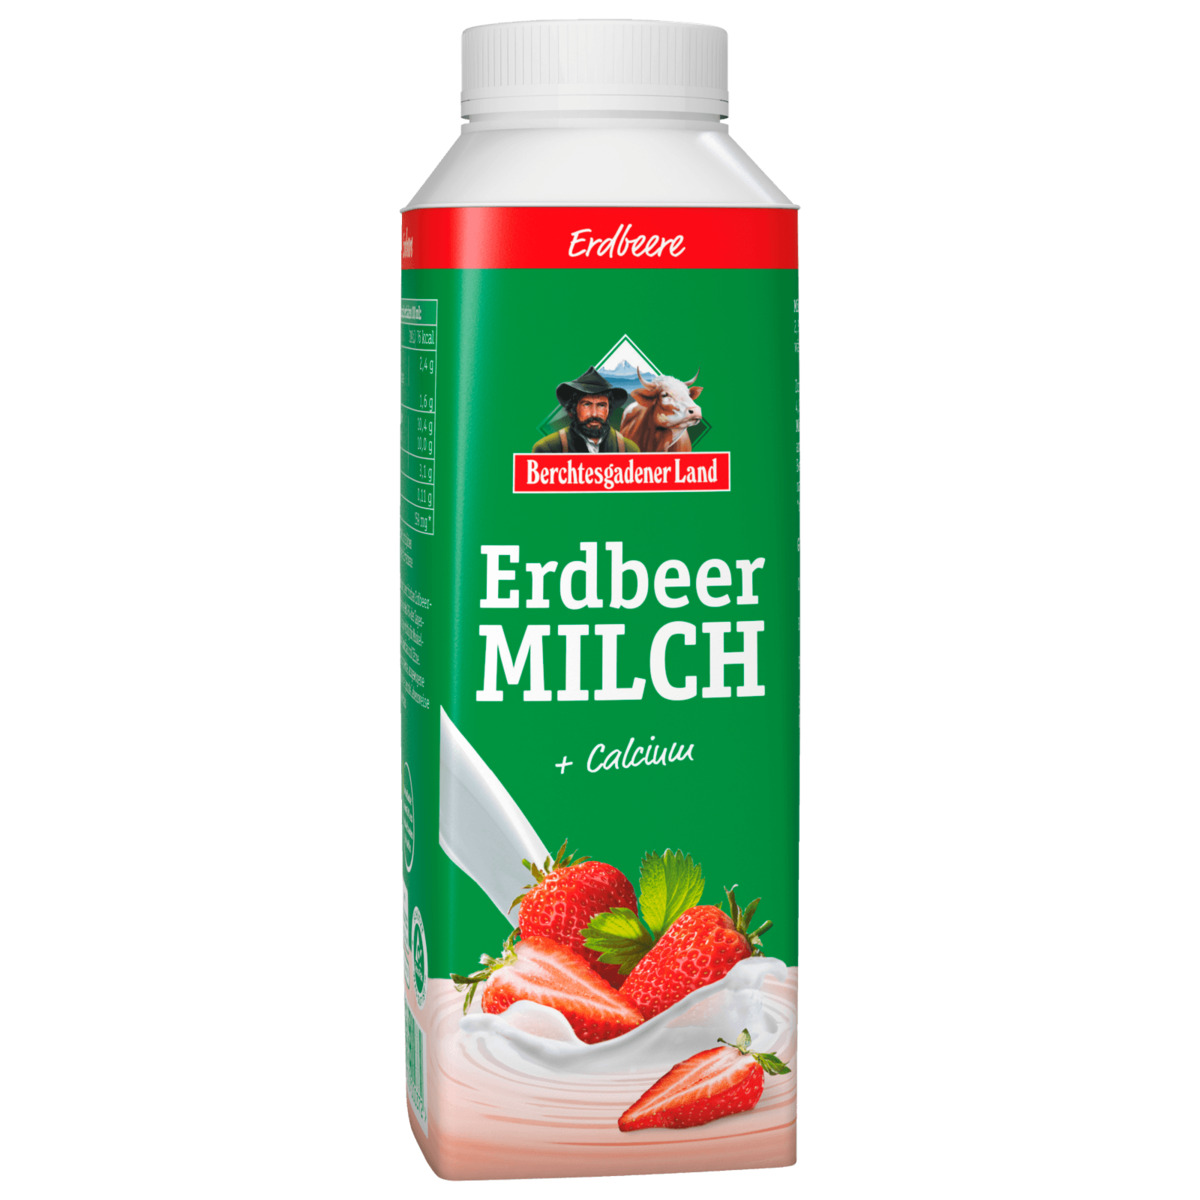 Berchtesgadener Land Erdbeer Milch 400g von REWE ansehen!